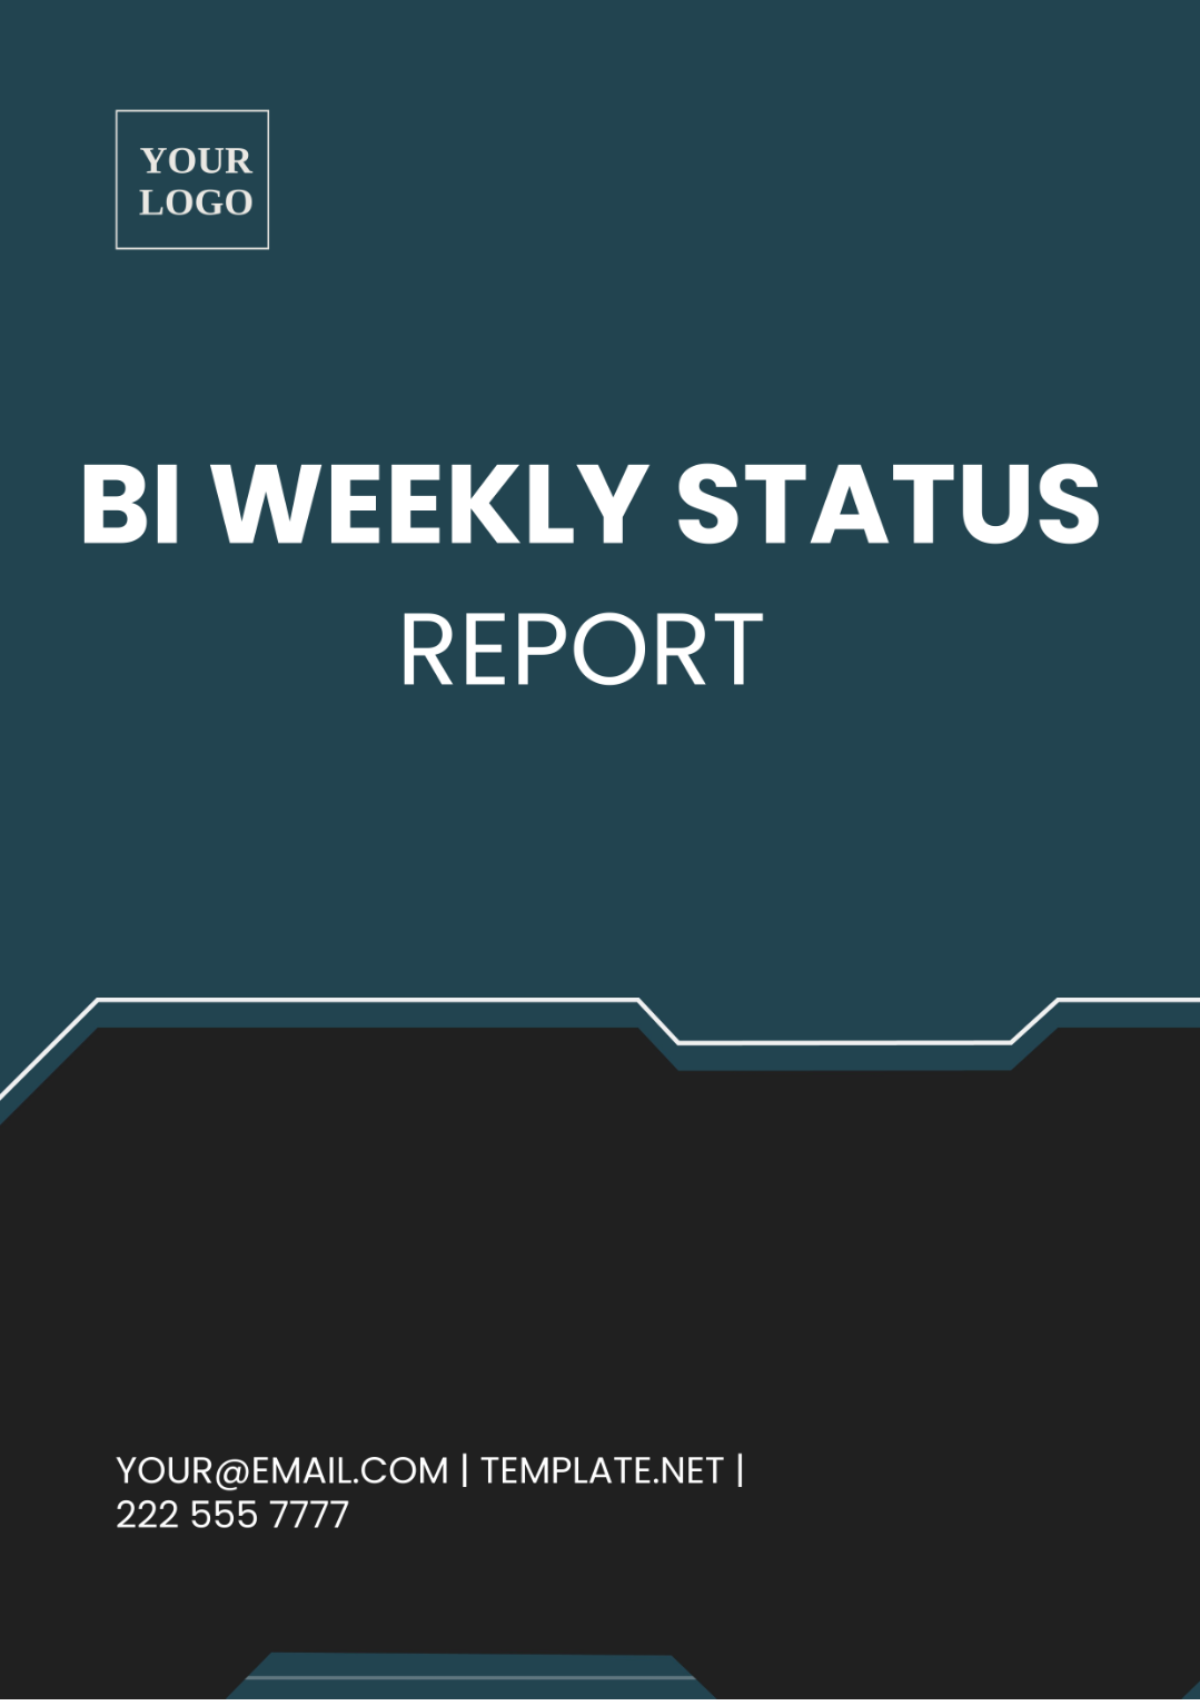 Bi Weekly Status Report Template